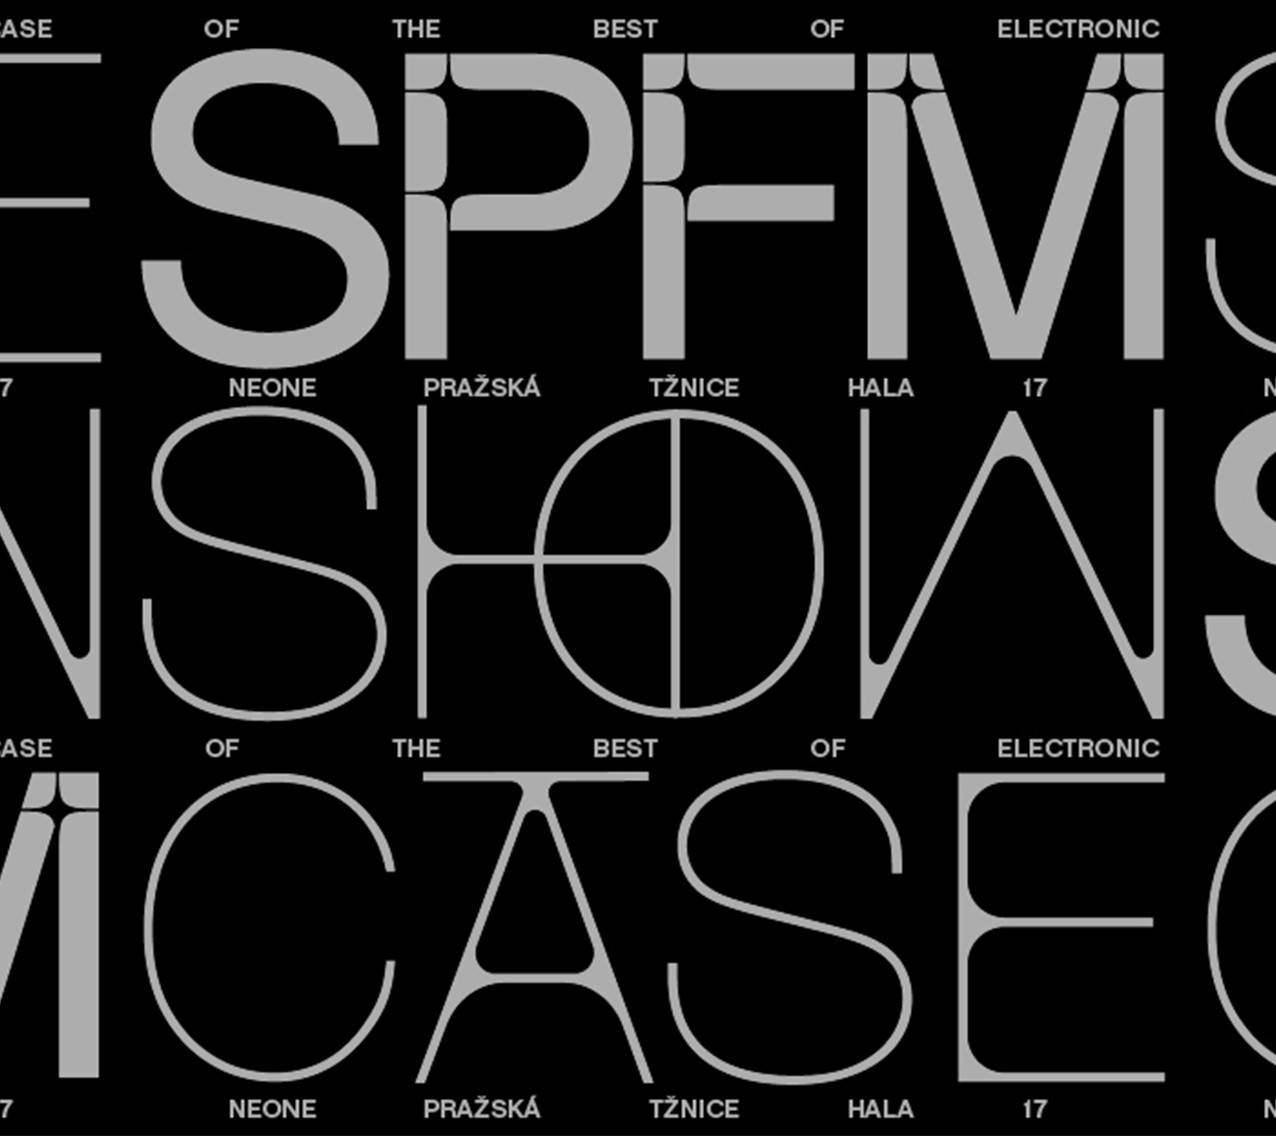 SPFM Showcase 25.11. @ Prague